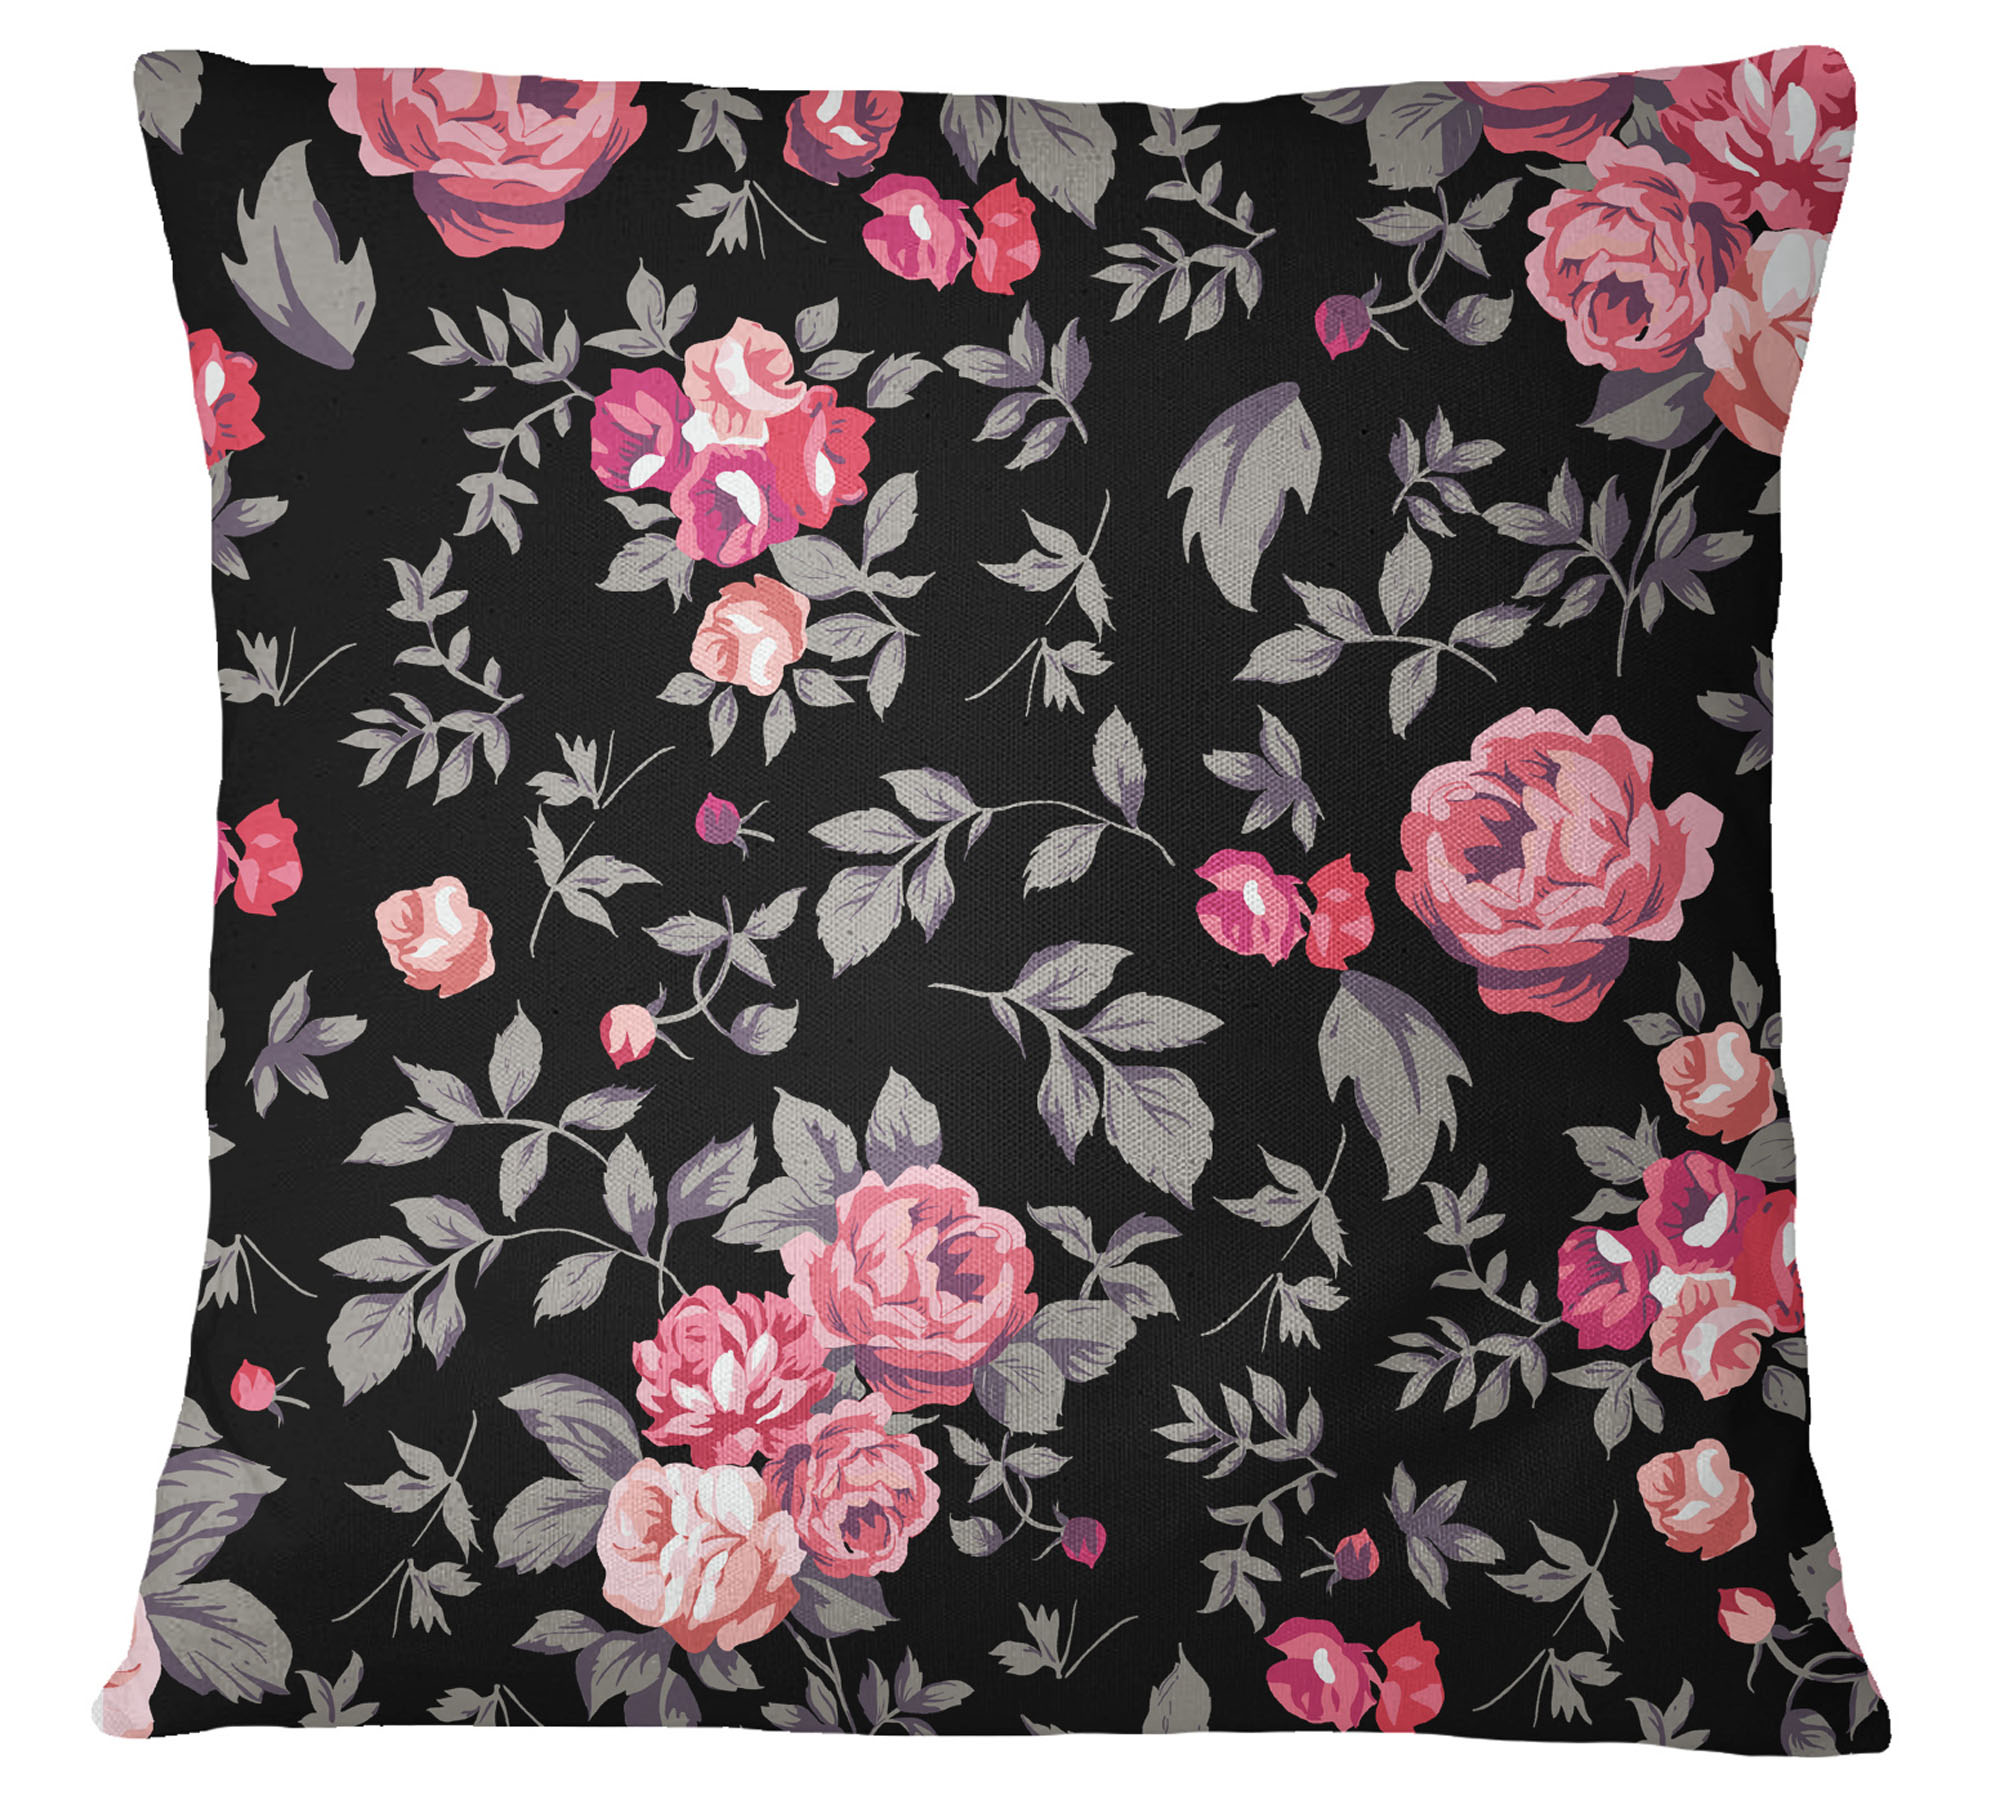 Details about   S4Sassy 2 Pcs Cushion Cover Cotton Poplin Floral Print Decorative Pillow Sham 